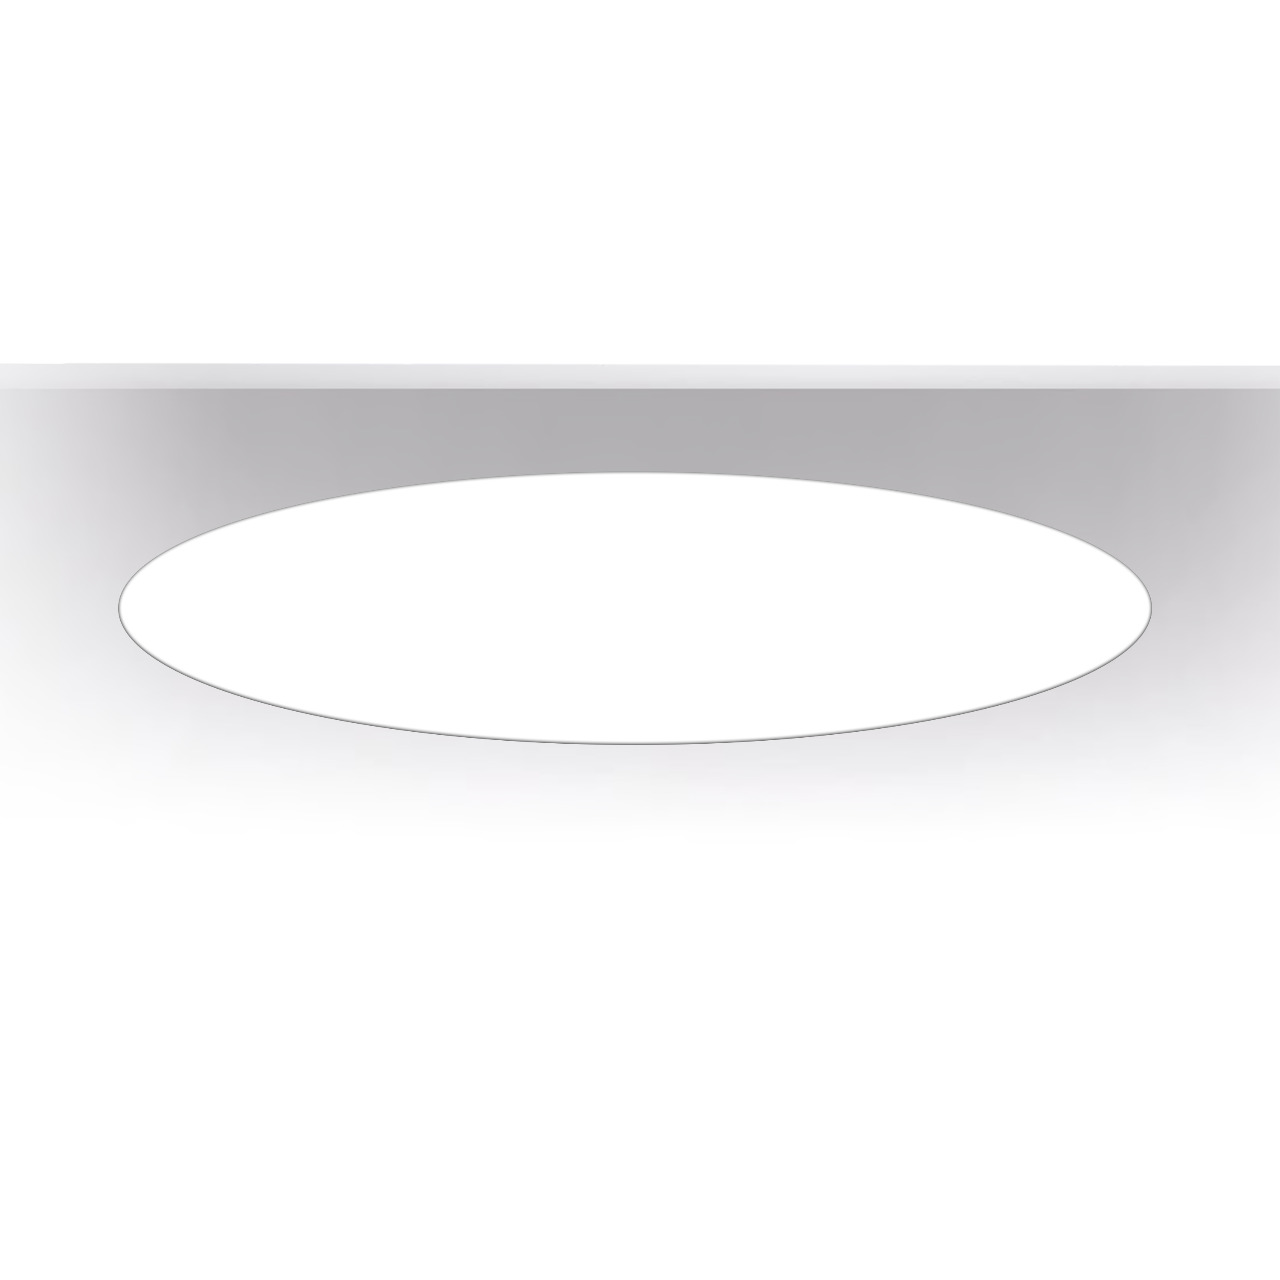 ART-inROUND FLEX LED Светильник встраиваемый круг (сплошная засветка) Встраиваемые светильники 